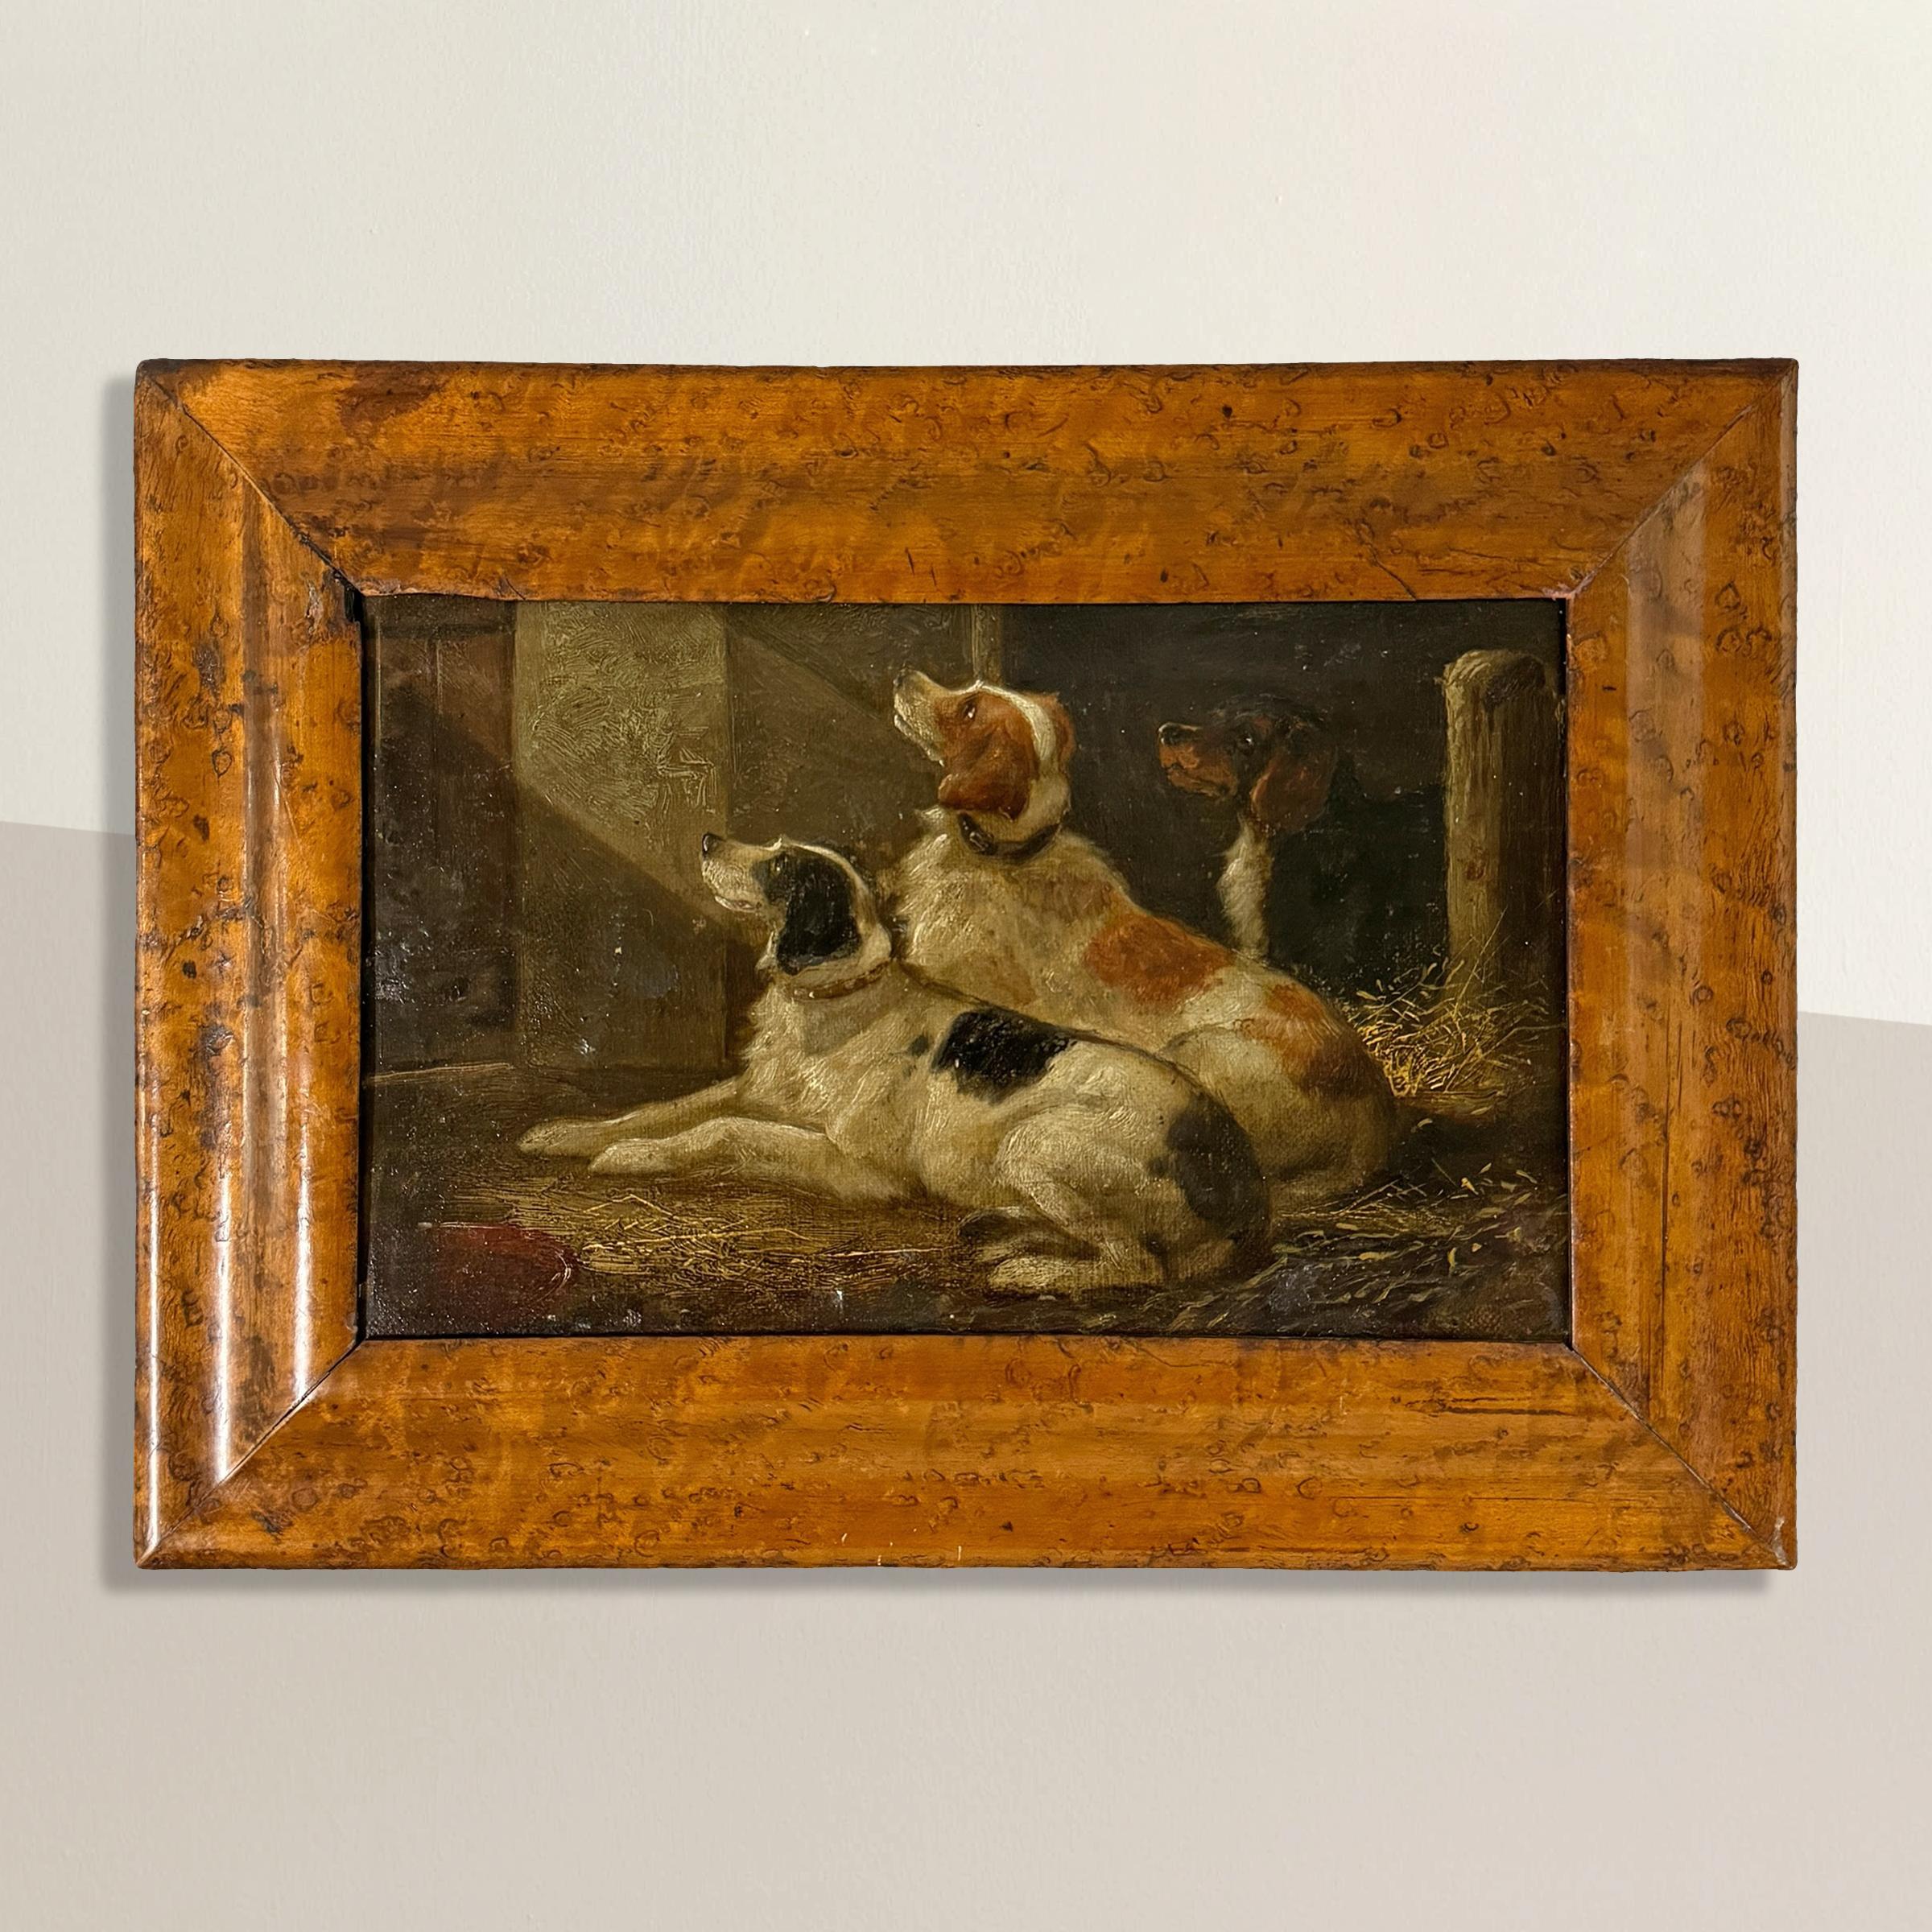 Dans cette exquise huile sur panneau anglaise du XIXe siècle, le charme rustique d'une grange de campagne prend vie alors que trois épagneuls se reposent paisiblement dans un lit de paille. Leurs regards attentifs, fixés vers le haut et hors du